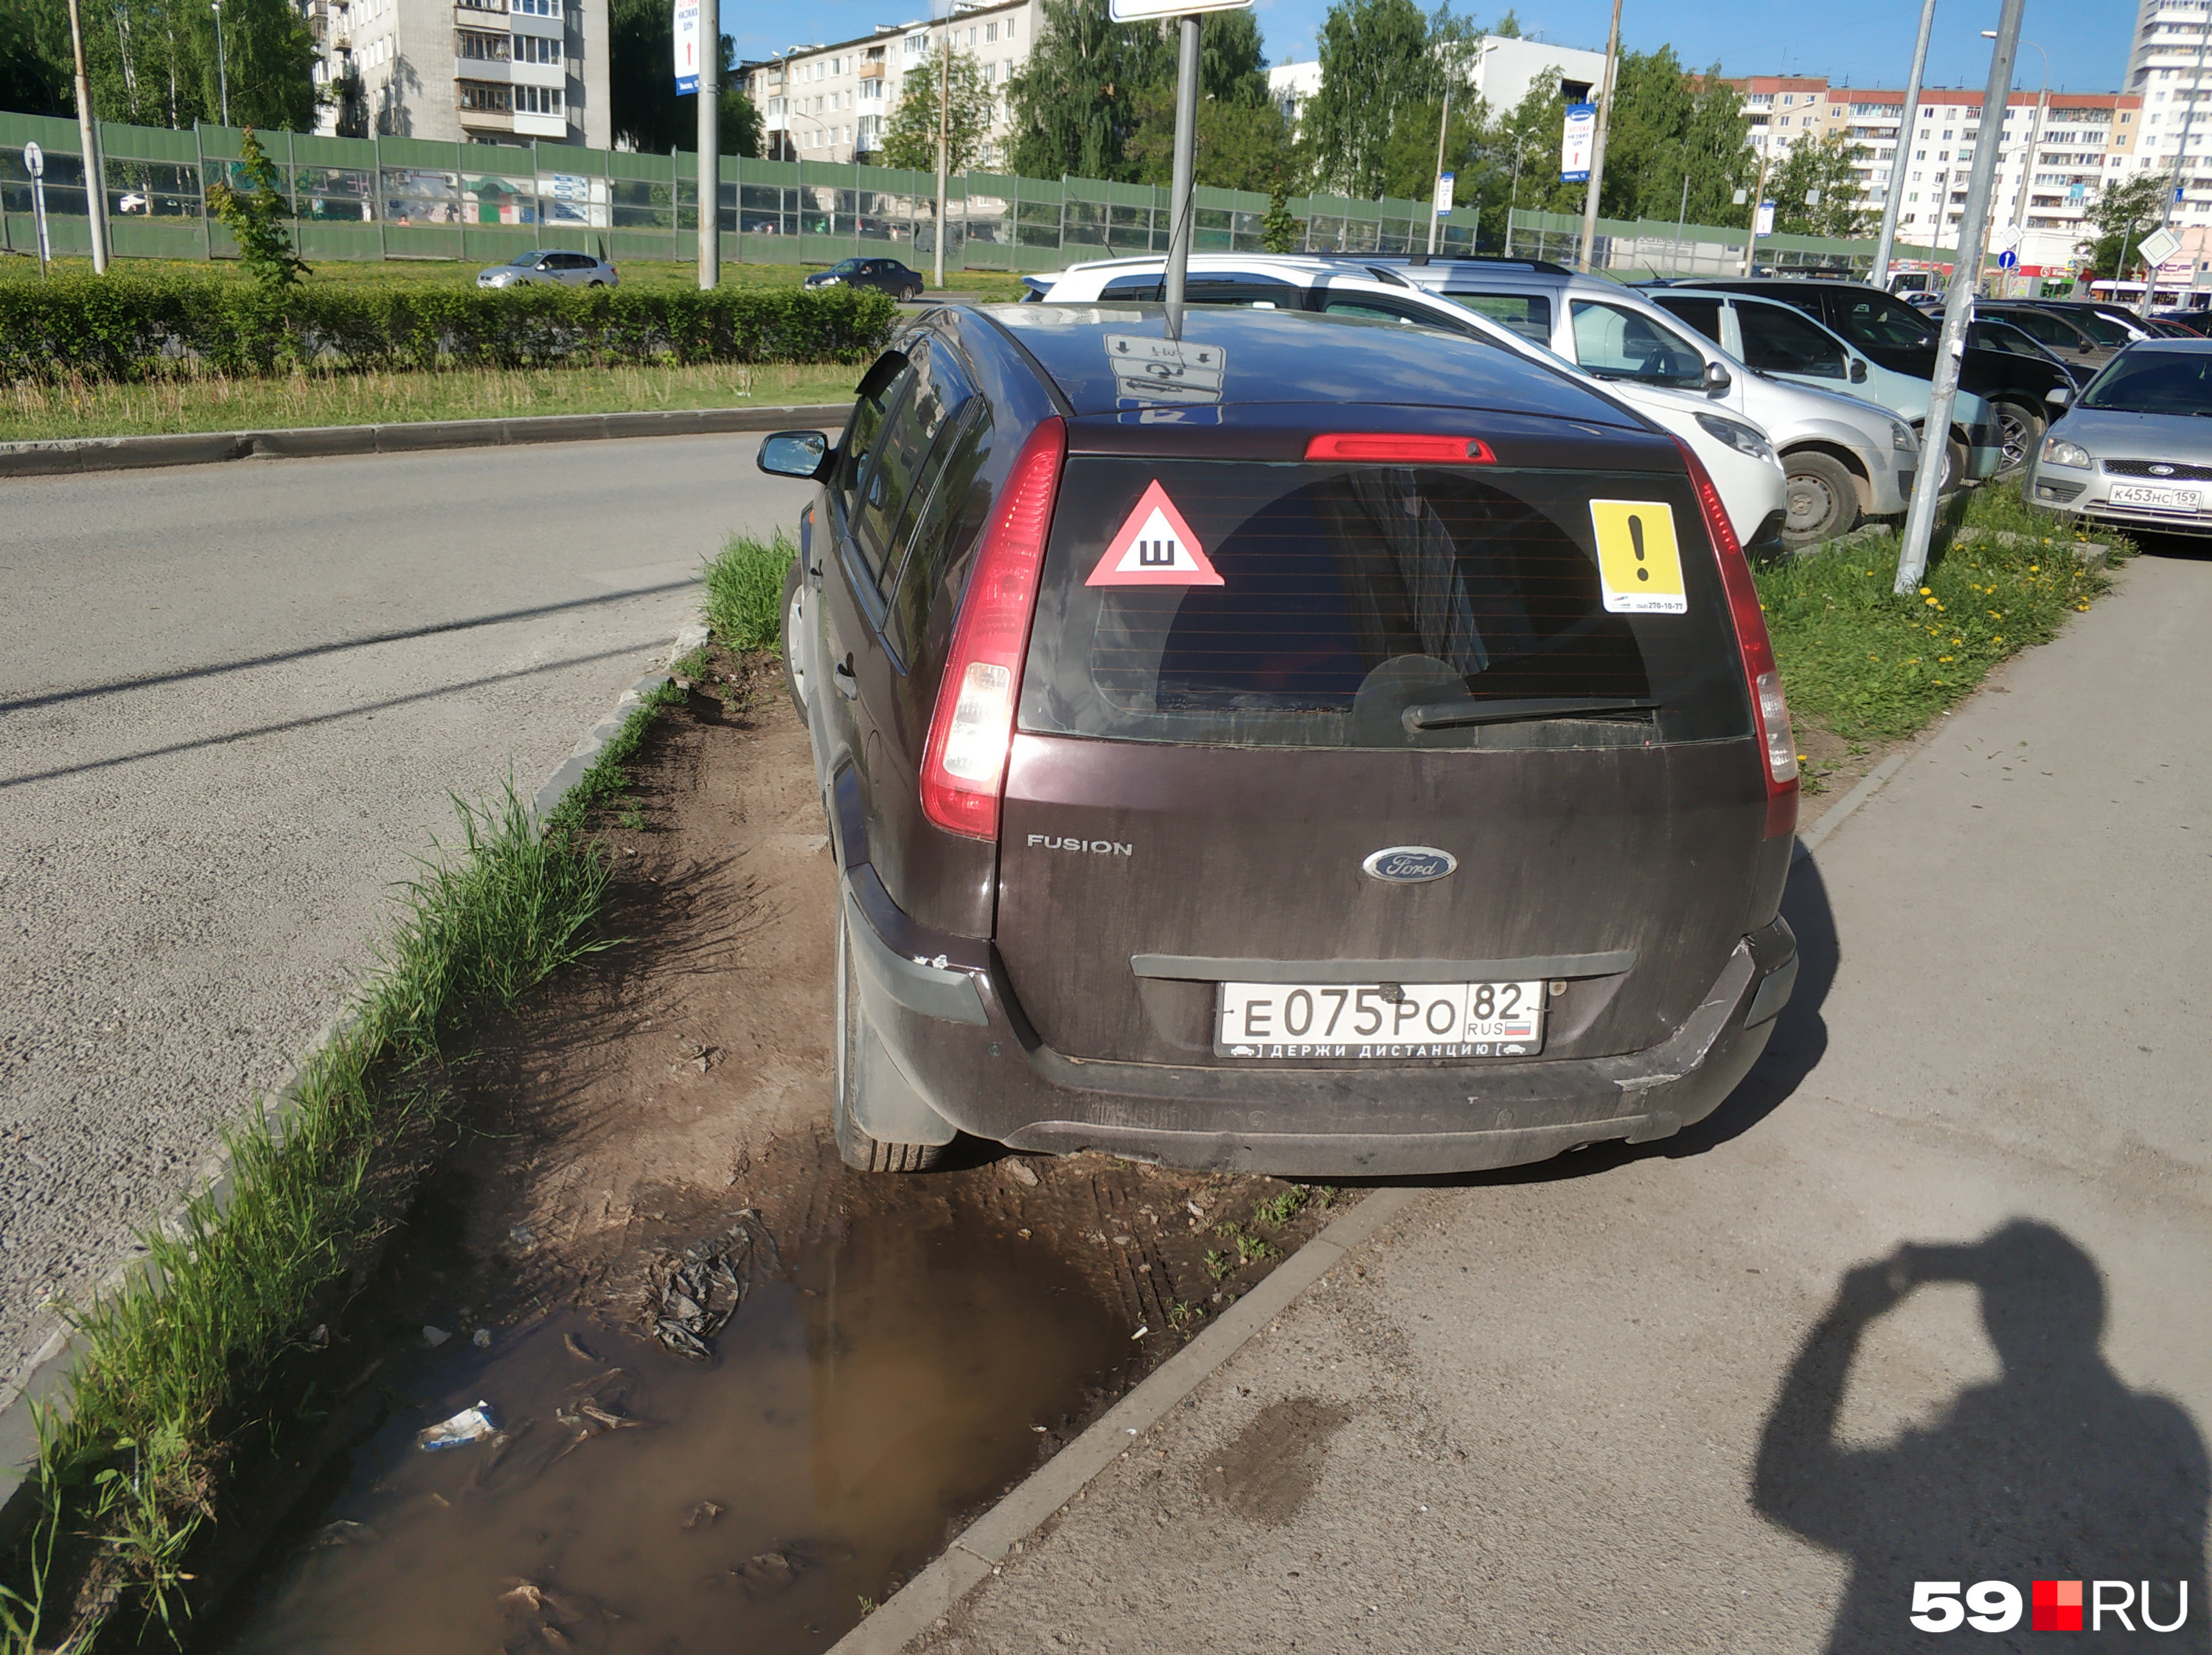 Автомобили не только мешают пешеходам, но и разносят грязь с обочин